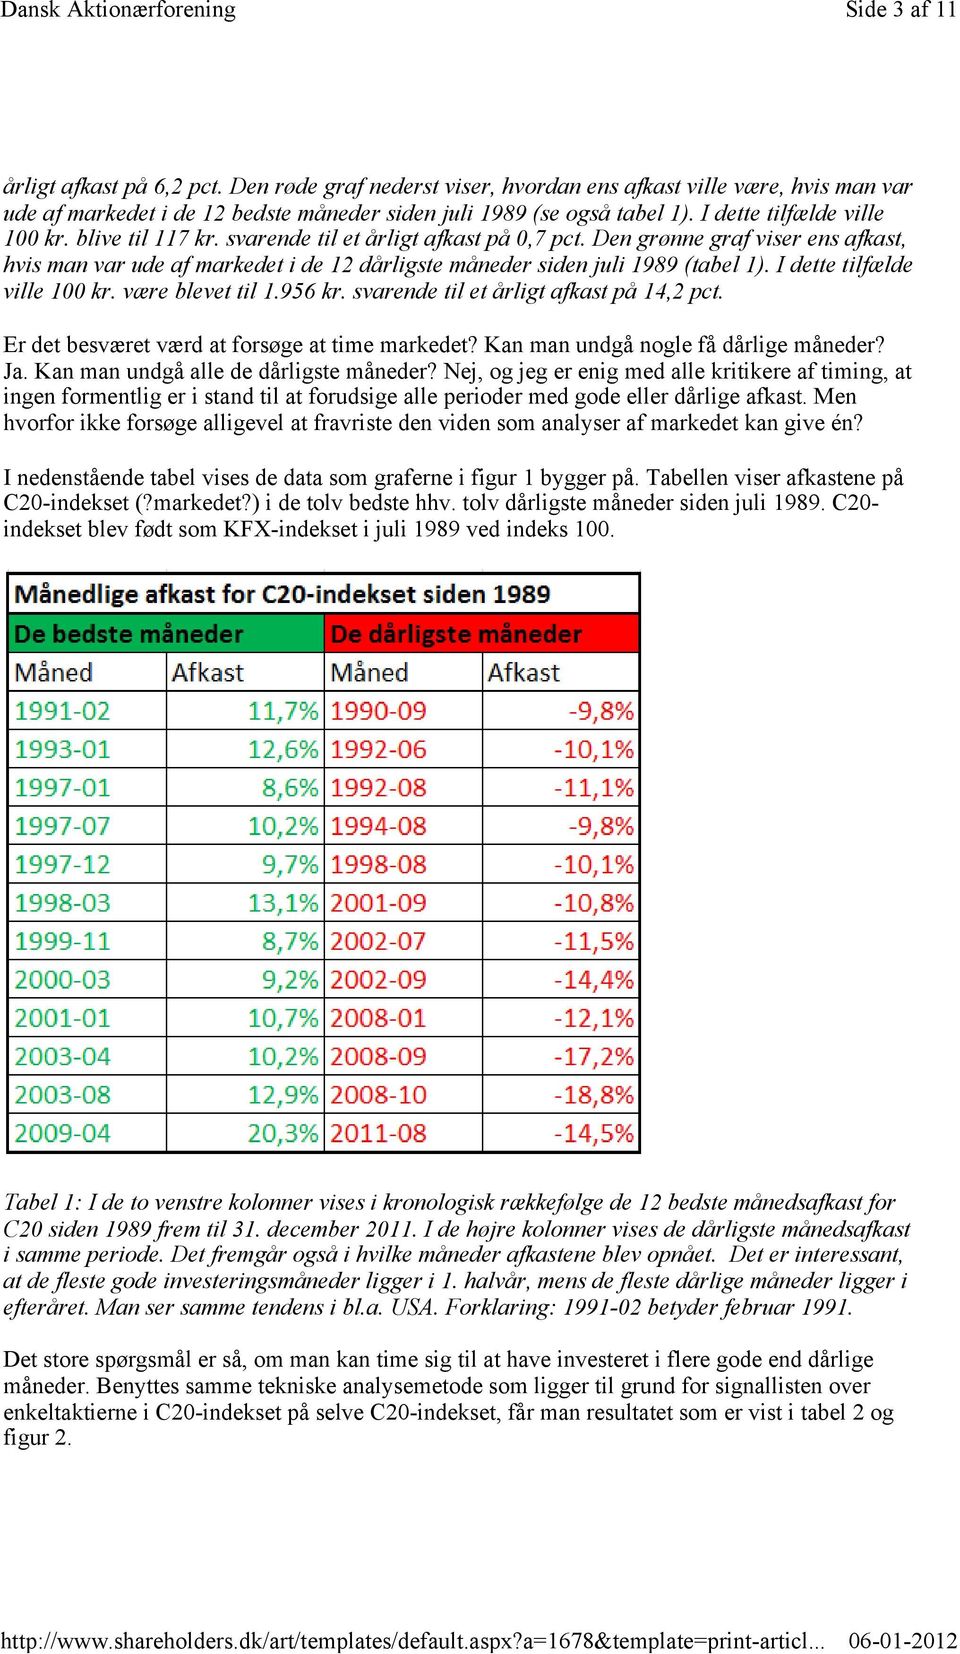 Den grønne graf viser ens afkast, hvis man var ude af markedet i de 12 dårligste måneder siden juli 1989 (tabel 1). I dette tilfælde ville 100 kr. være blevet til 1.956 kr.